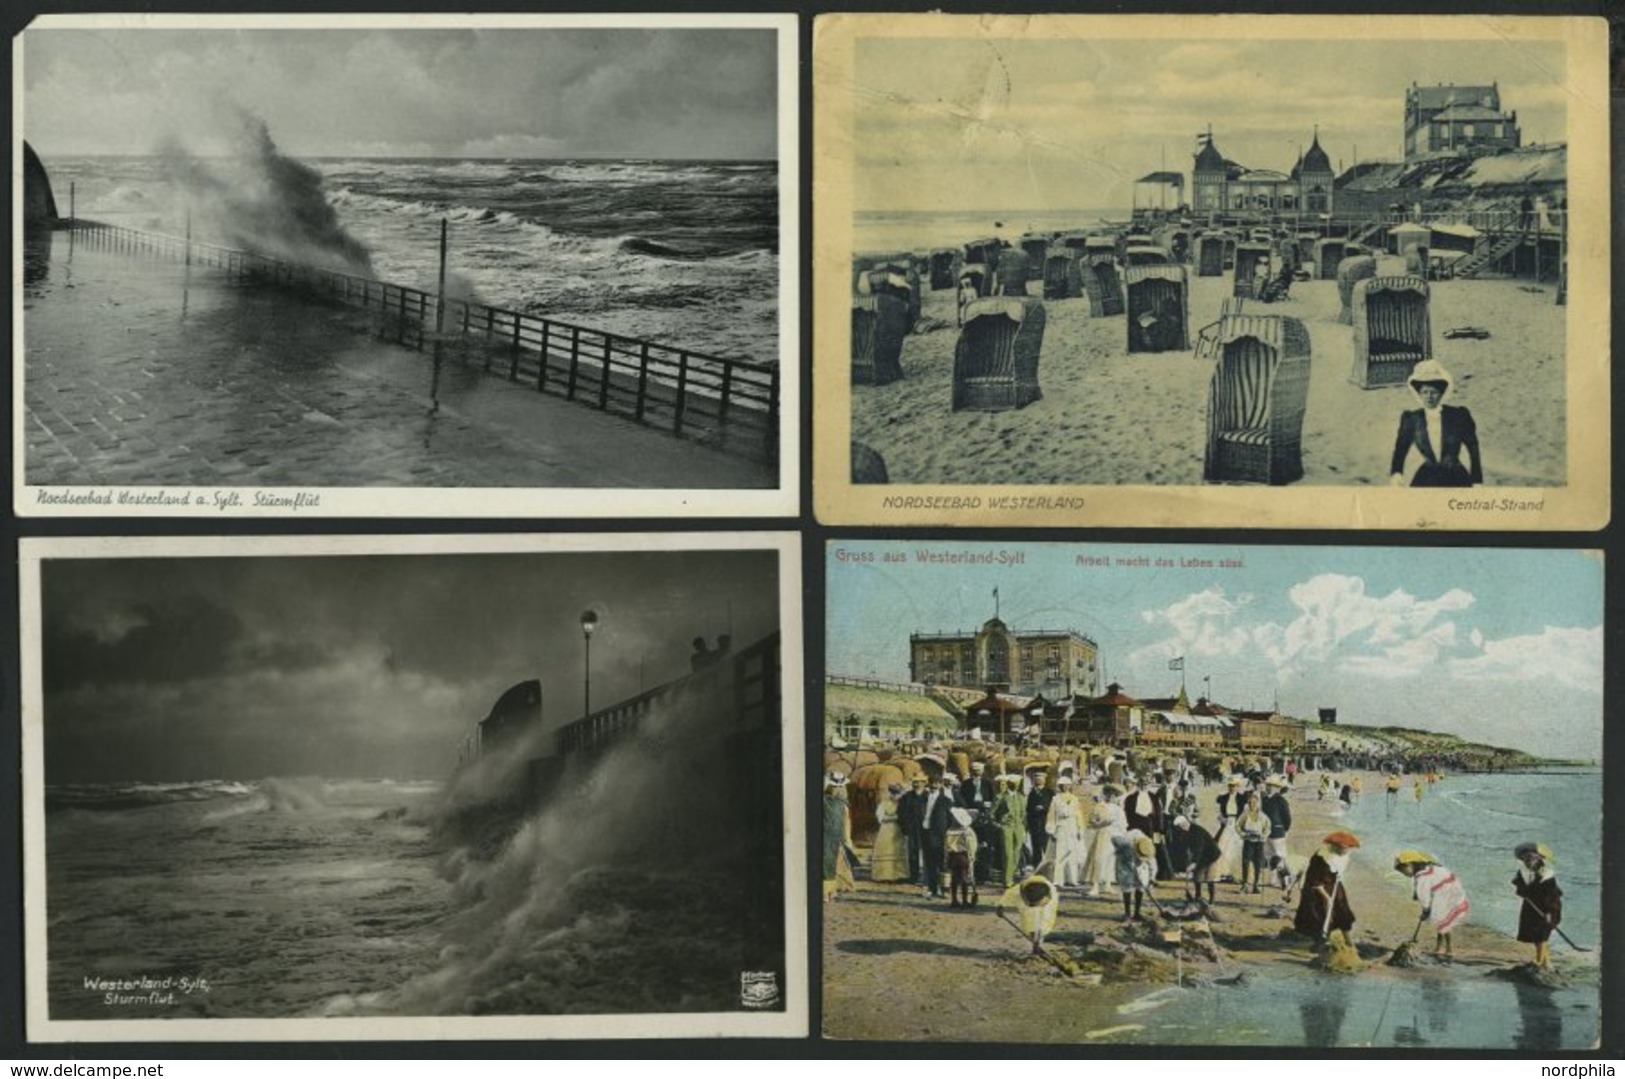 ALTE POSTKARTEN - DEUTSCH SYLT - Westerland, Sammlung von 100 verschiedenen Ansichtskarten im Briefalbum, dabei Gruß aus